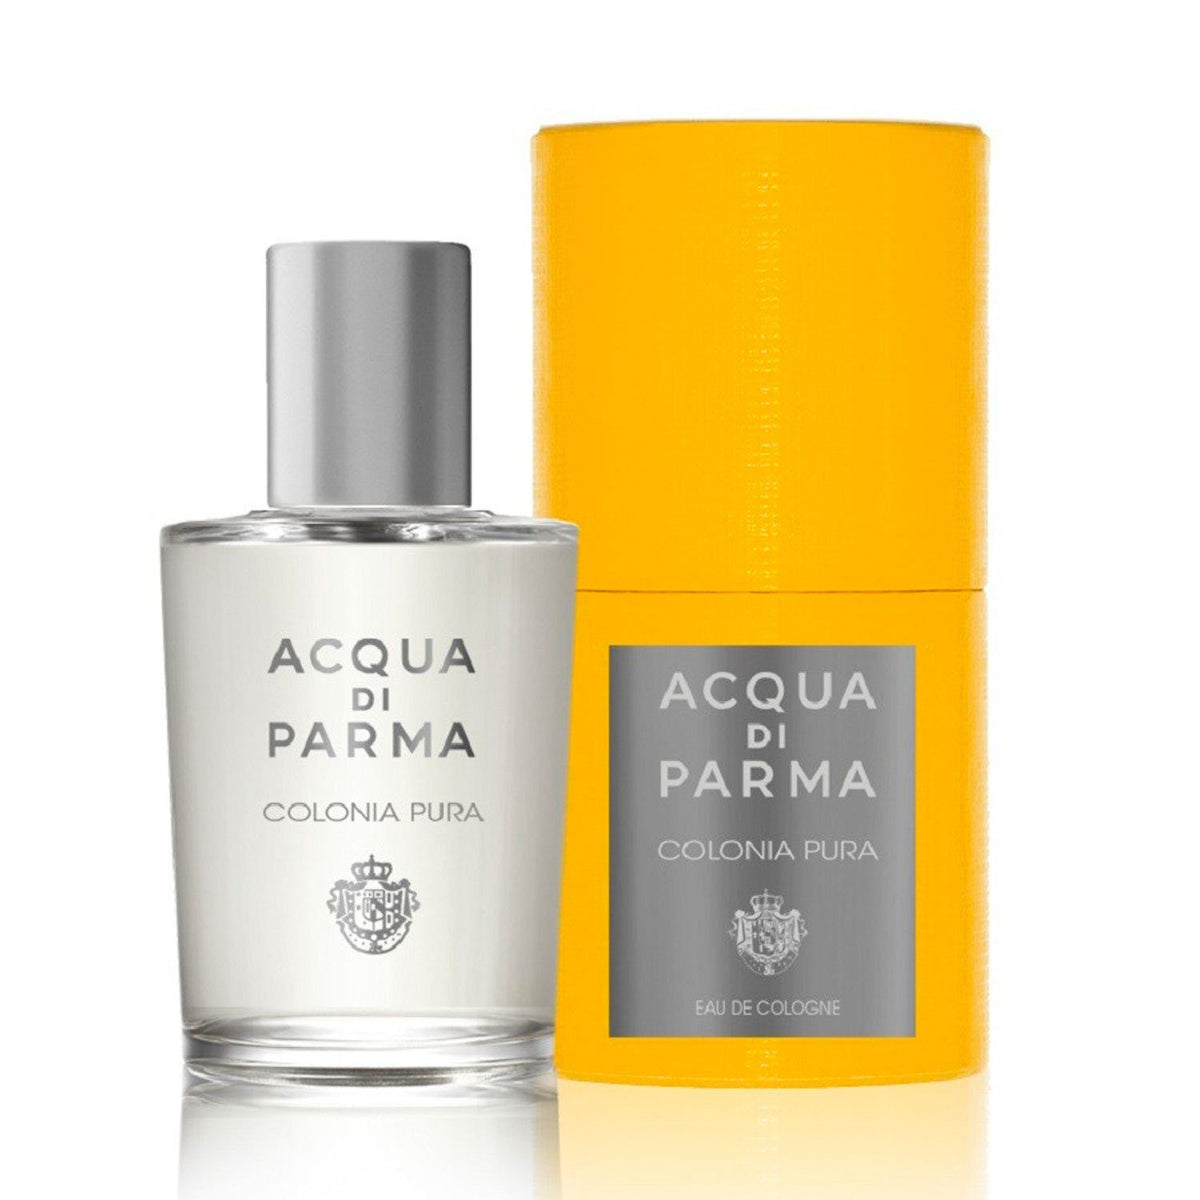 Acqua Di Parma Colonia Pura Edc Samples/Decants - Snap Perfumes